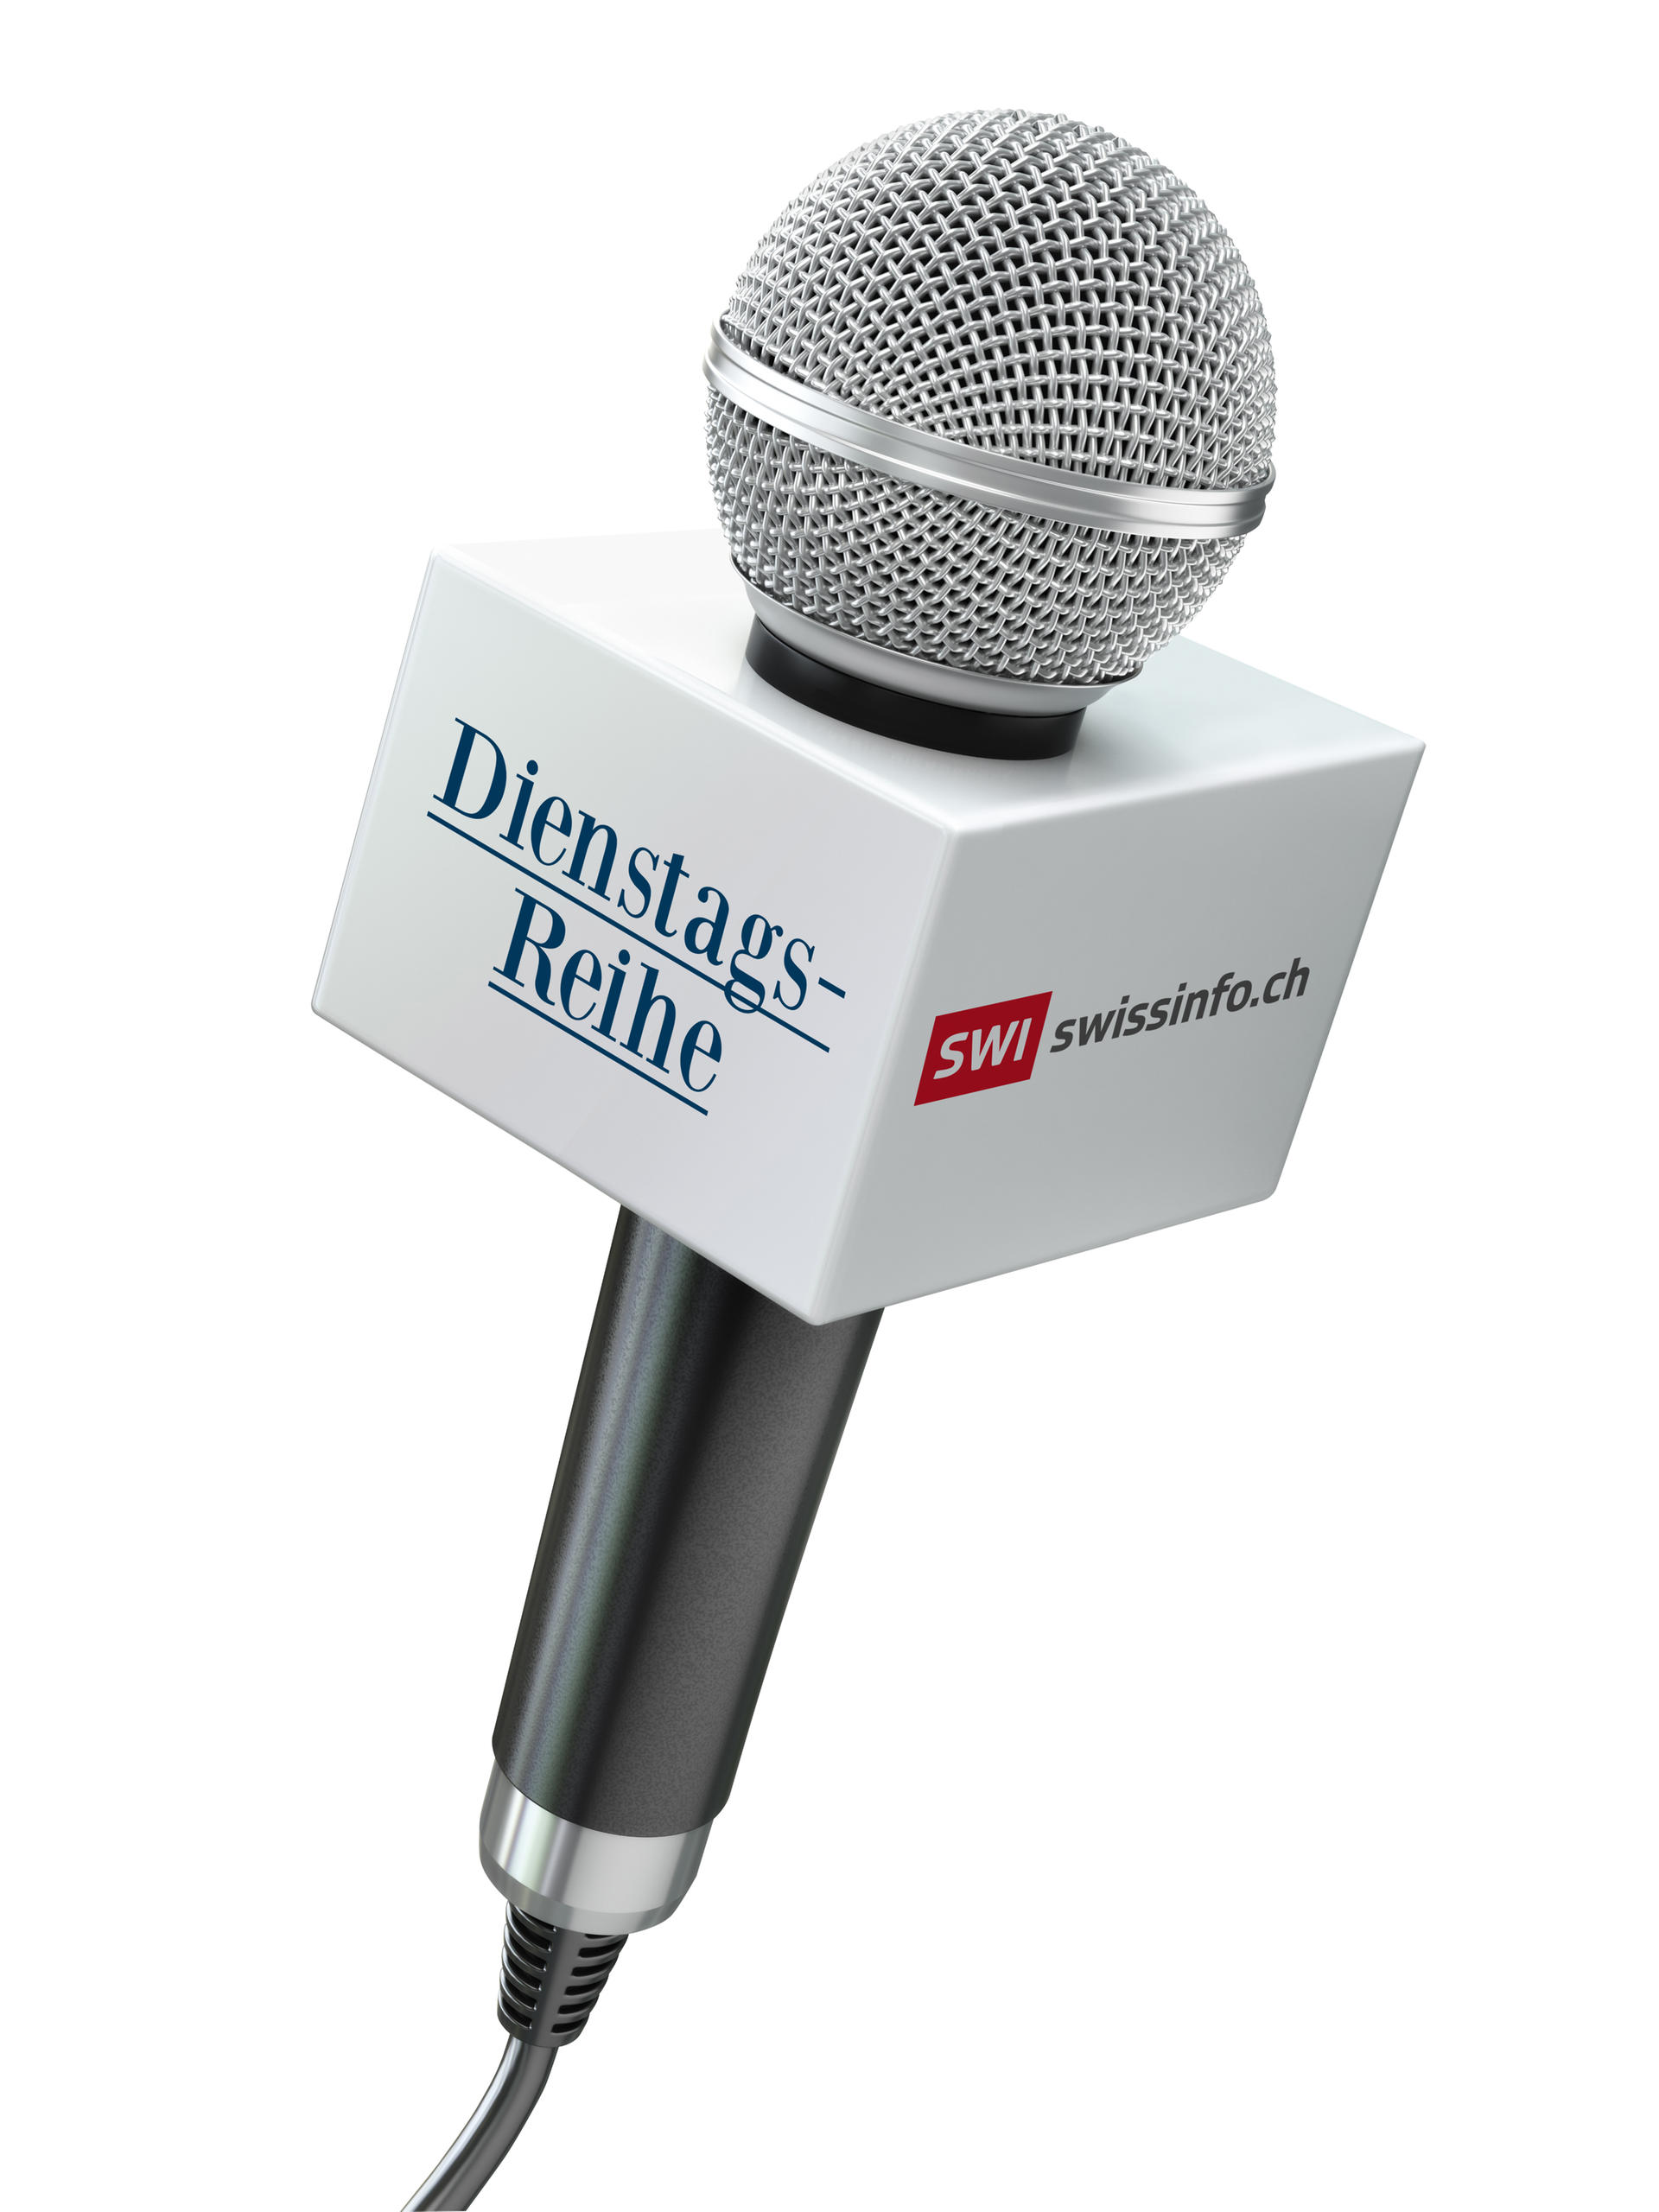 Mikrofon mit Dienstagsreihe als Aufschrift und SIW swissinfo.ch Logo